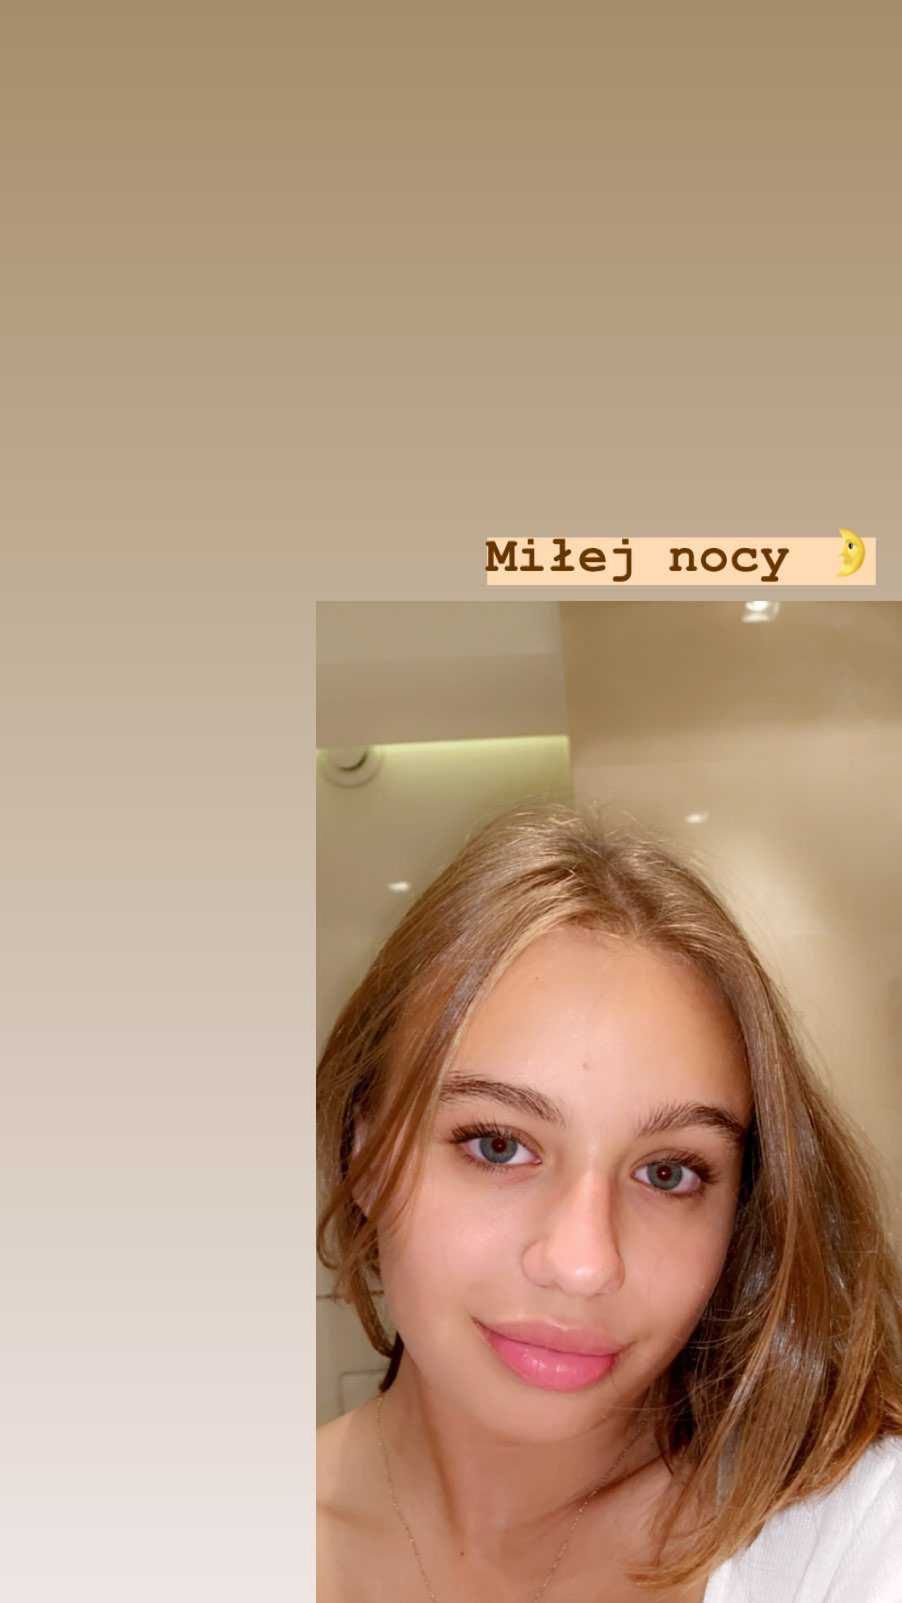 Oliwia Bieniuk - nocne selfie